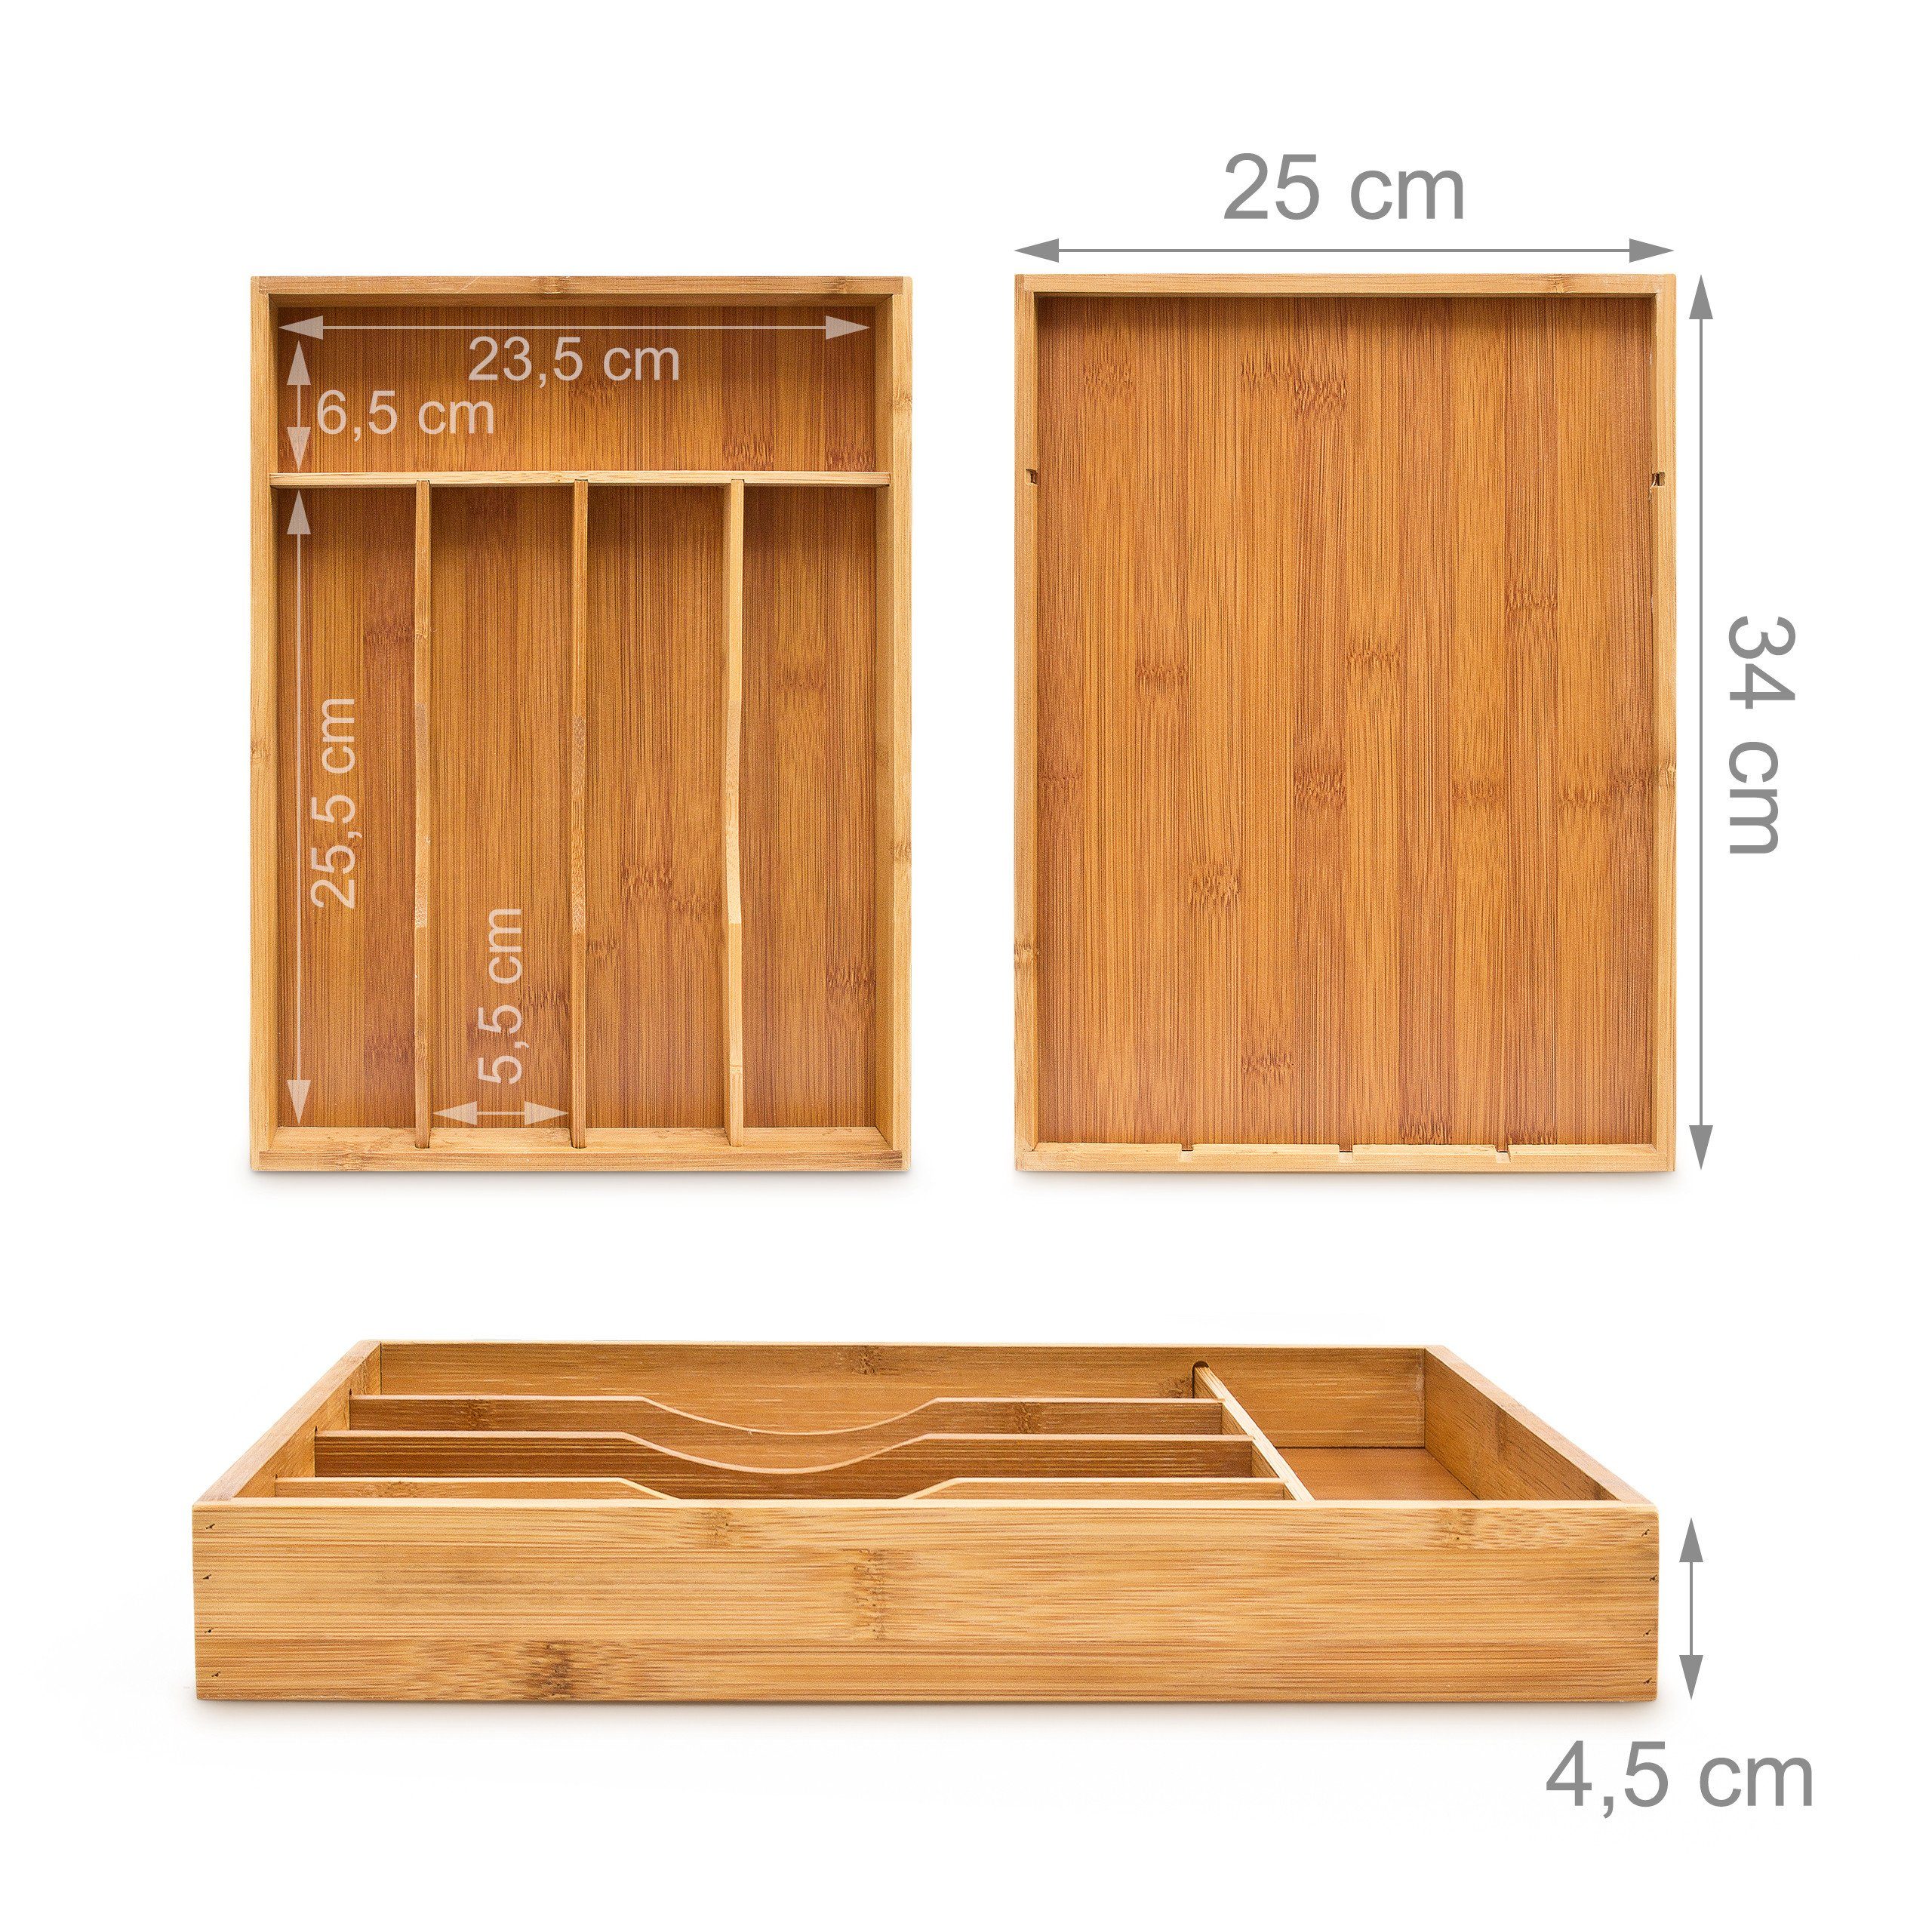 relaxdays Bambus Besteckkasten Besteckkasten 34x25x4,5cm